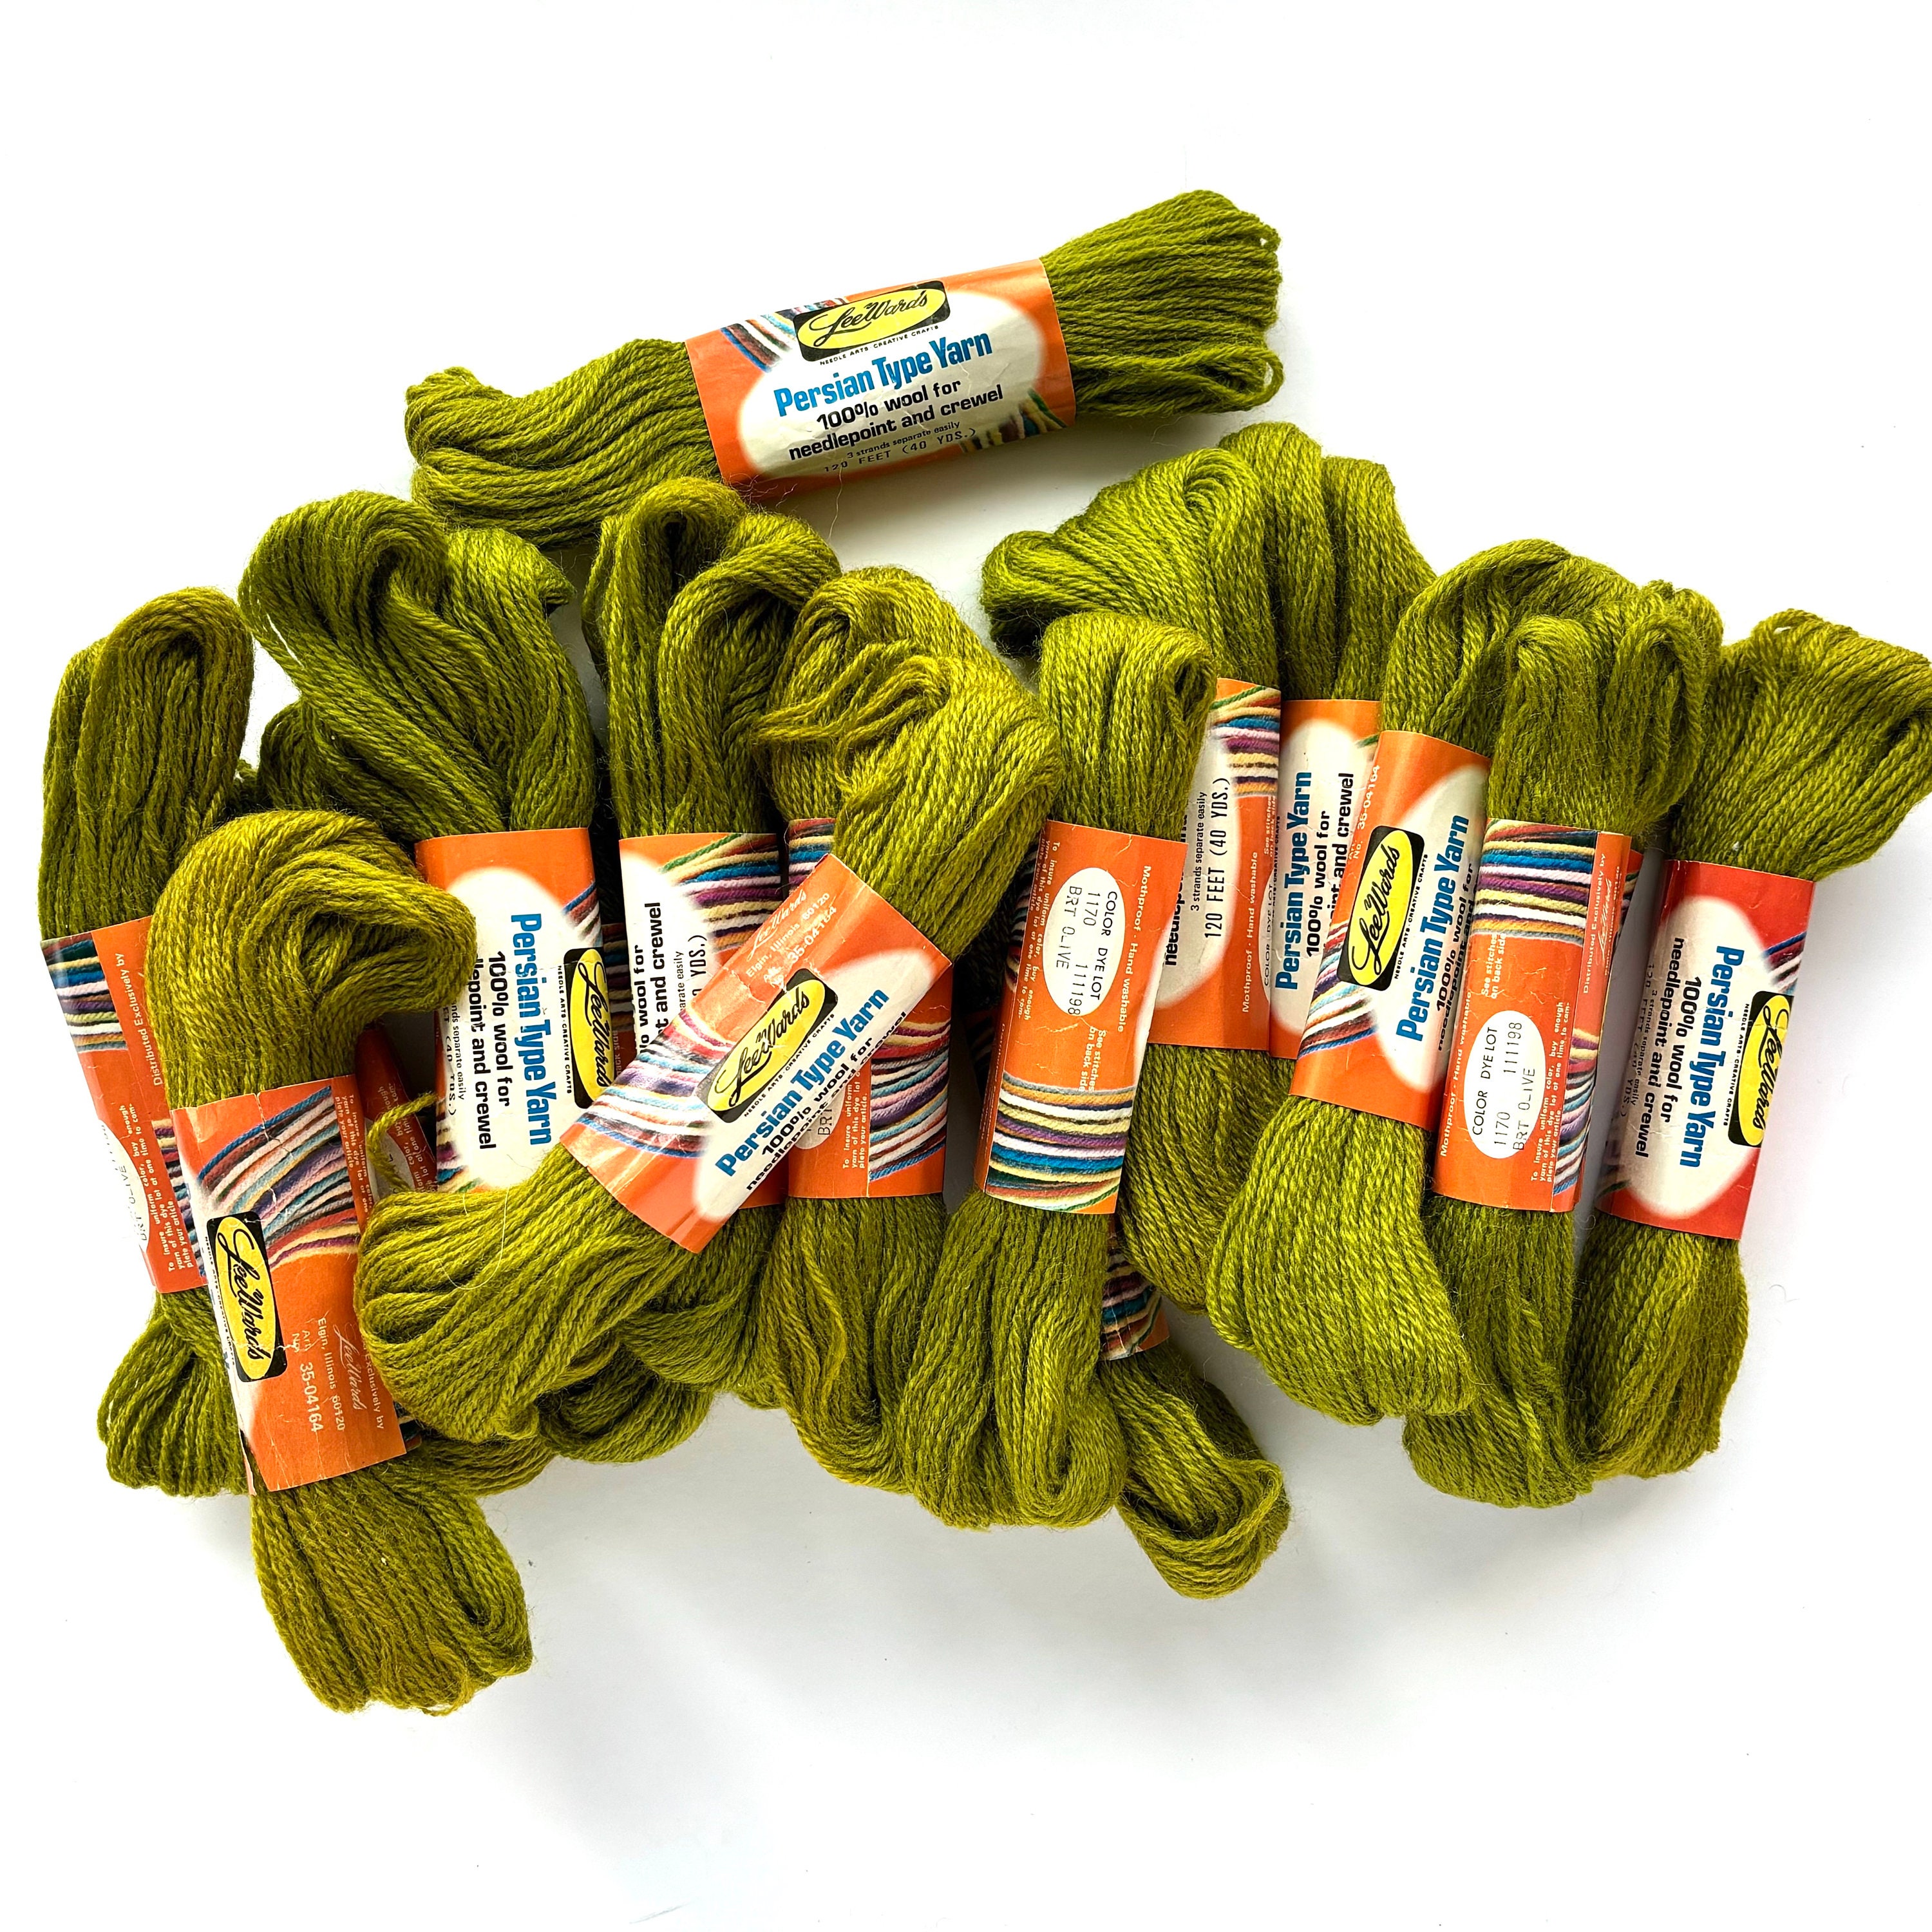 Waverly Wool Needlepoint Yarn - 1000 Series - Brown Sheep Company, Inc.